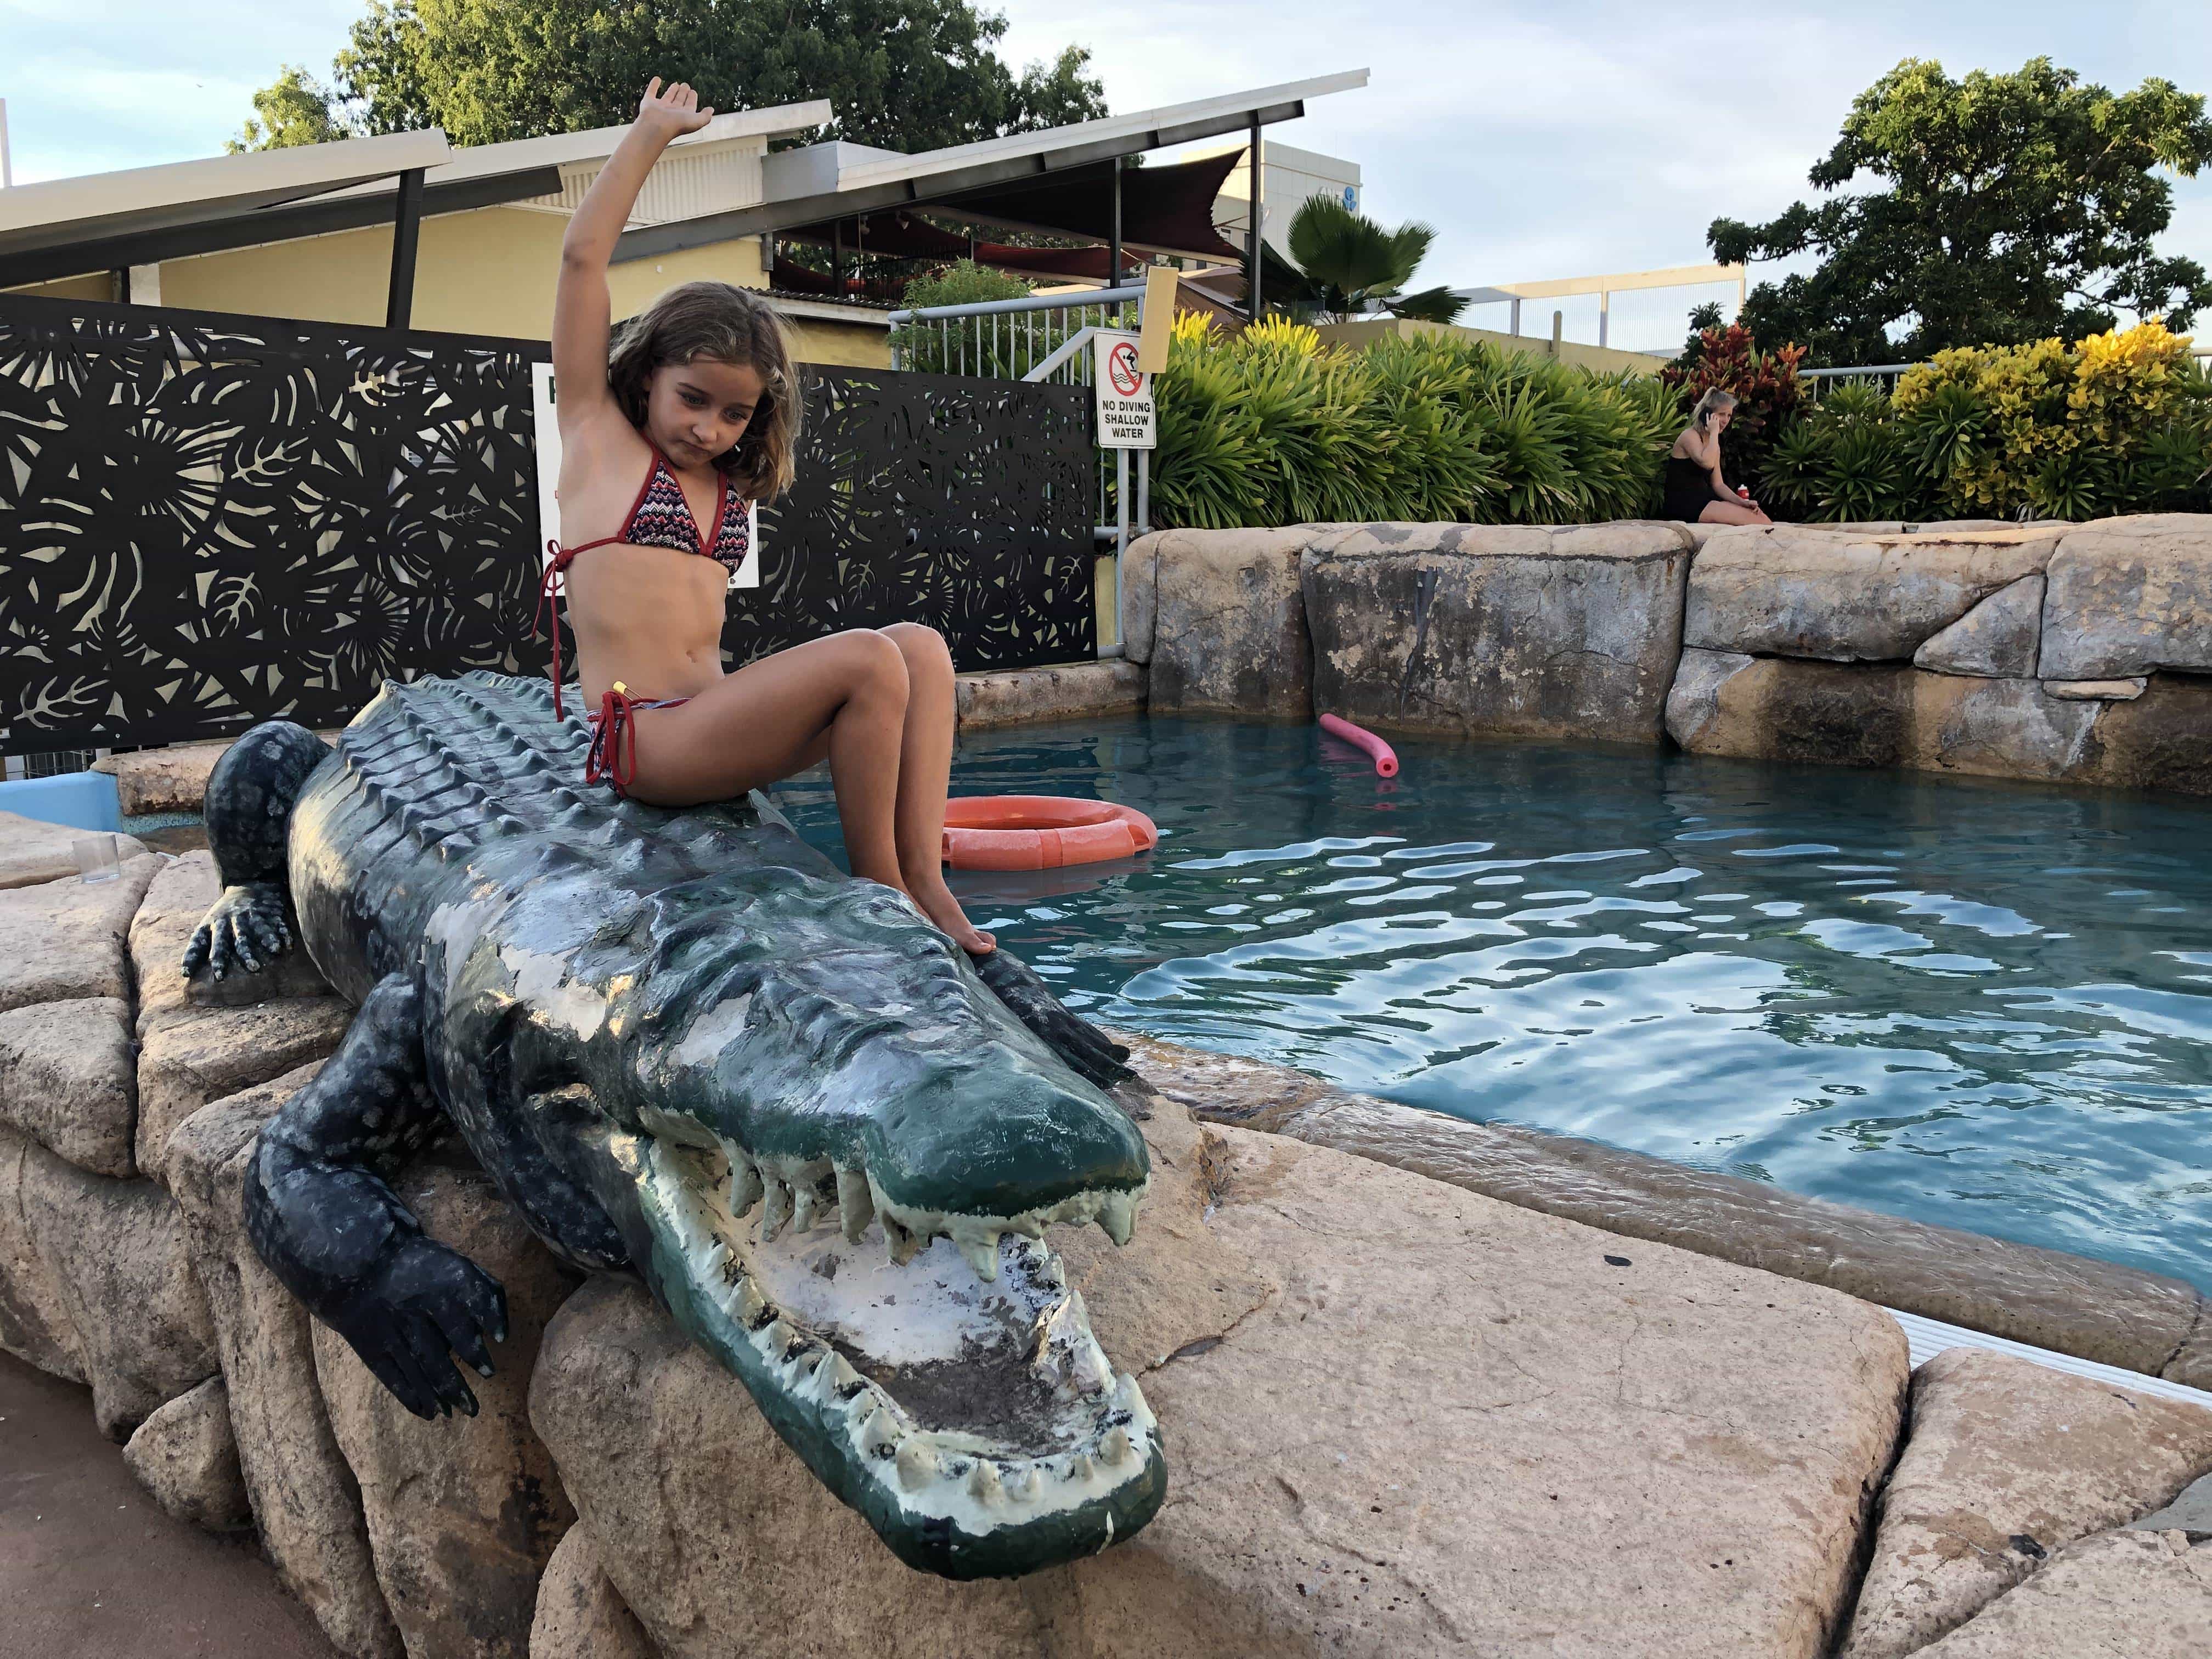 Big crocodile and swimming